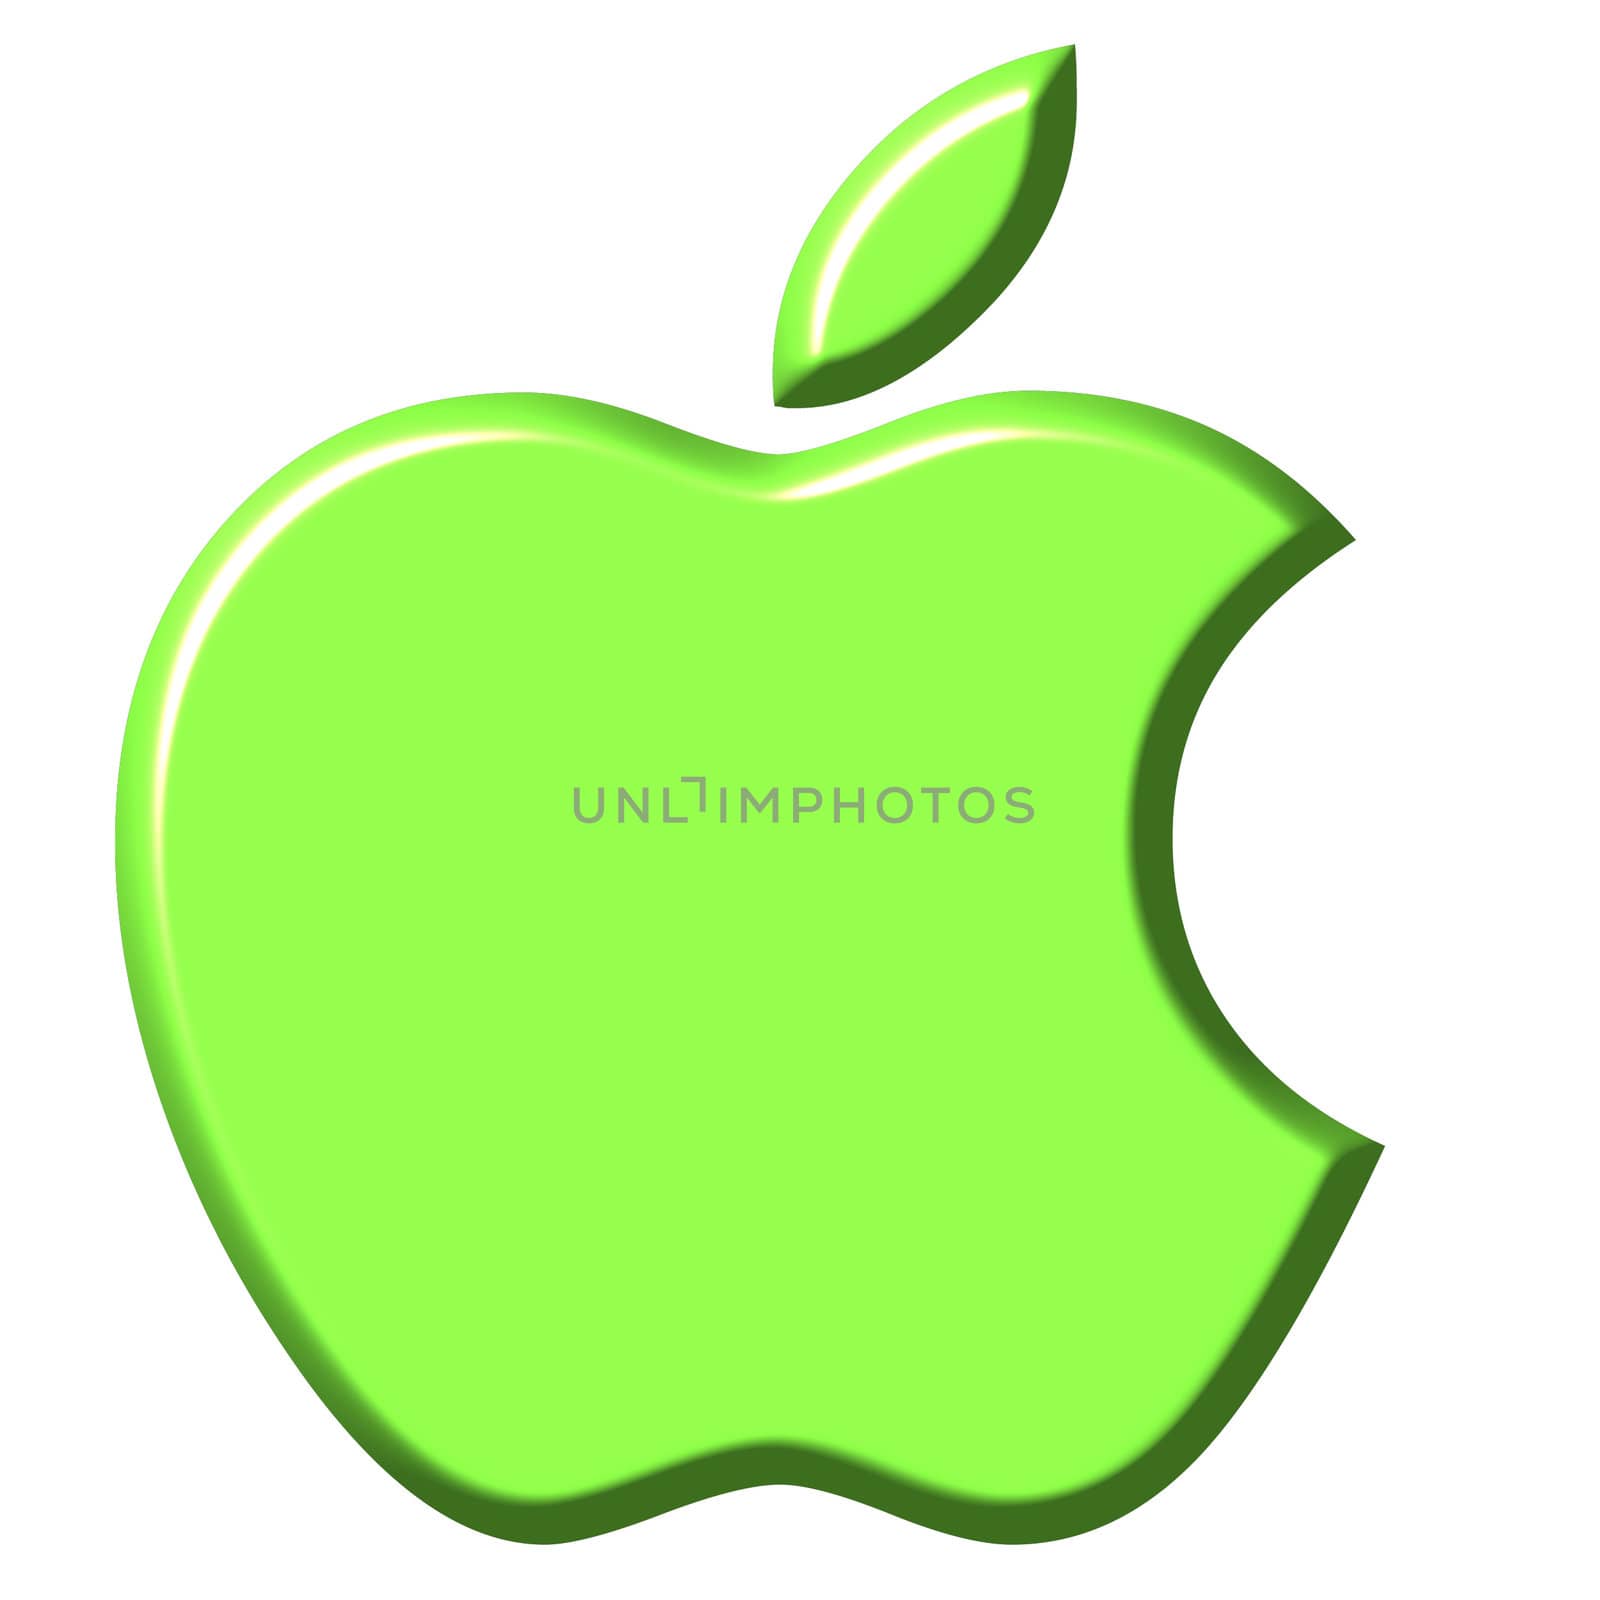 Bitten Green Apple by Georgios